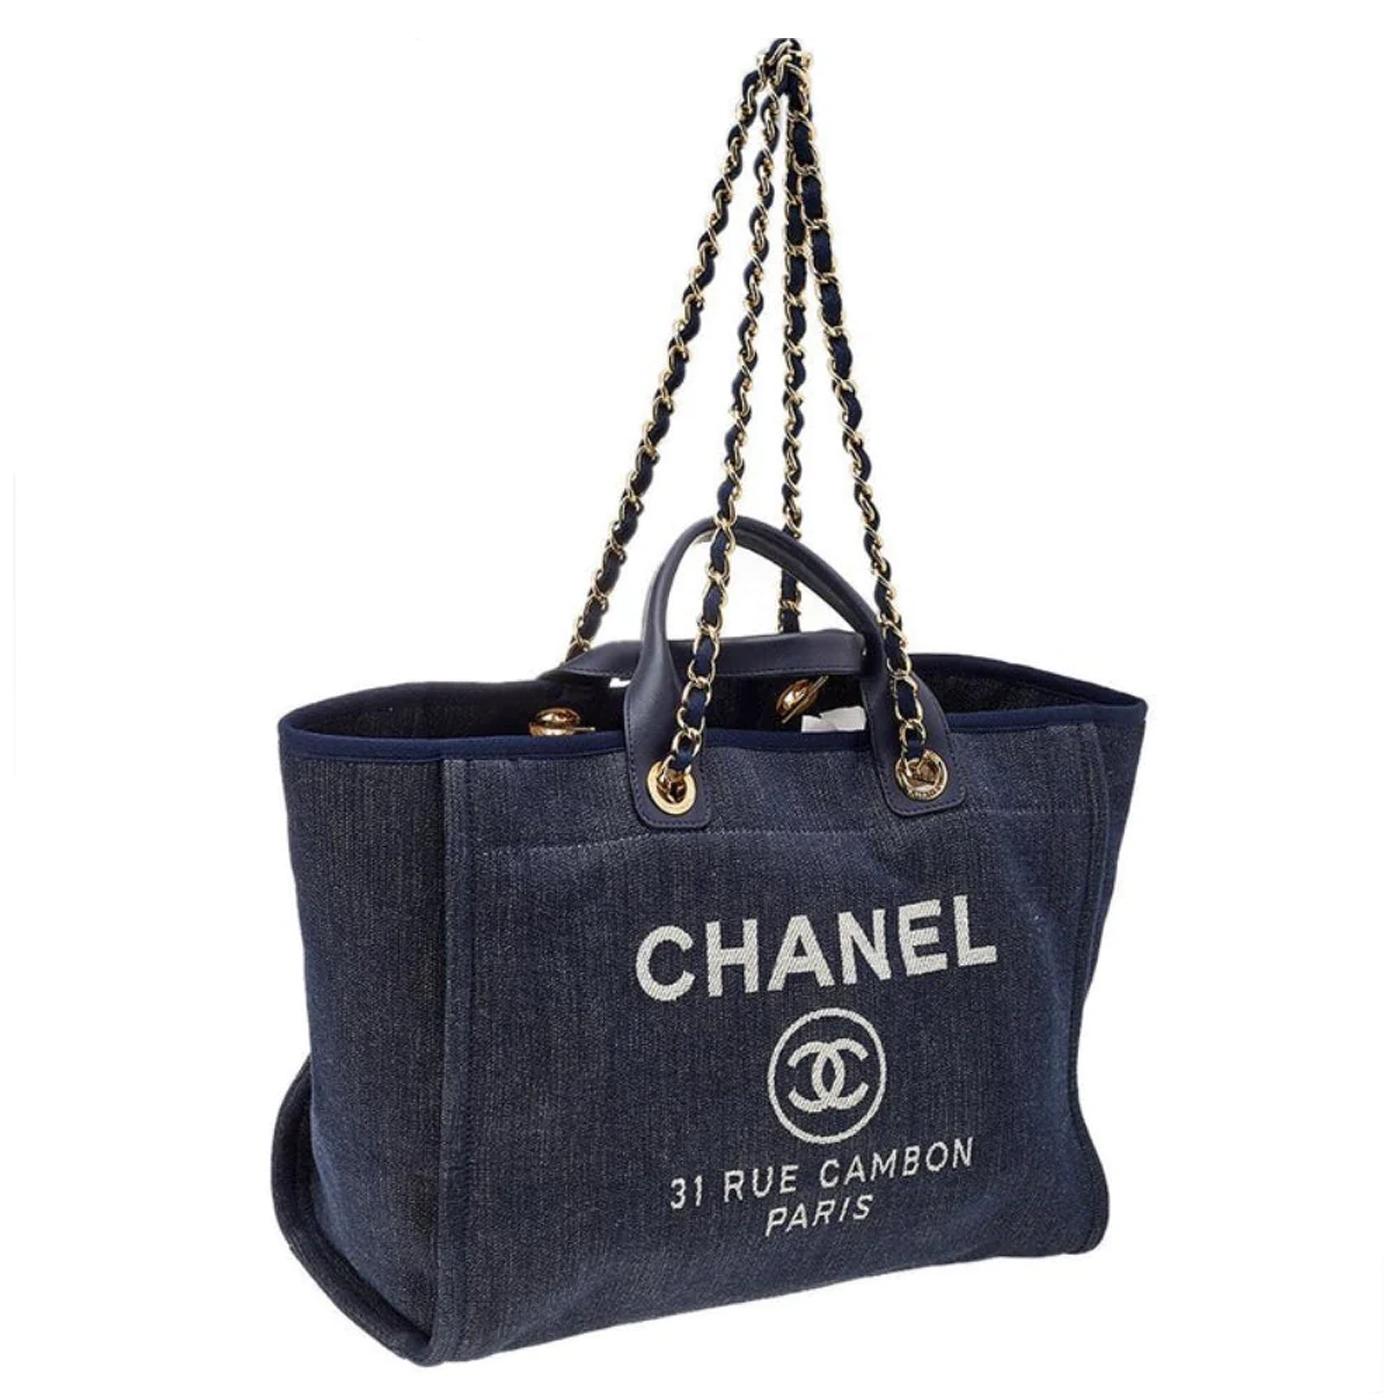 Auf der Vorderseite dieser Tasche sind Chanel-Logos und der Straßenname des berühmten Chanel-Flagshipstores 